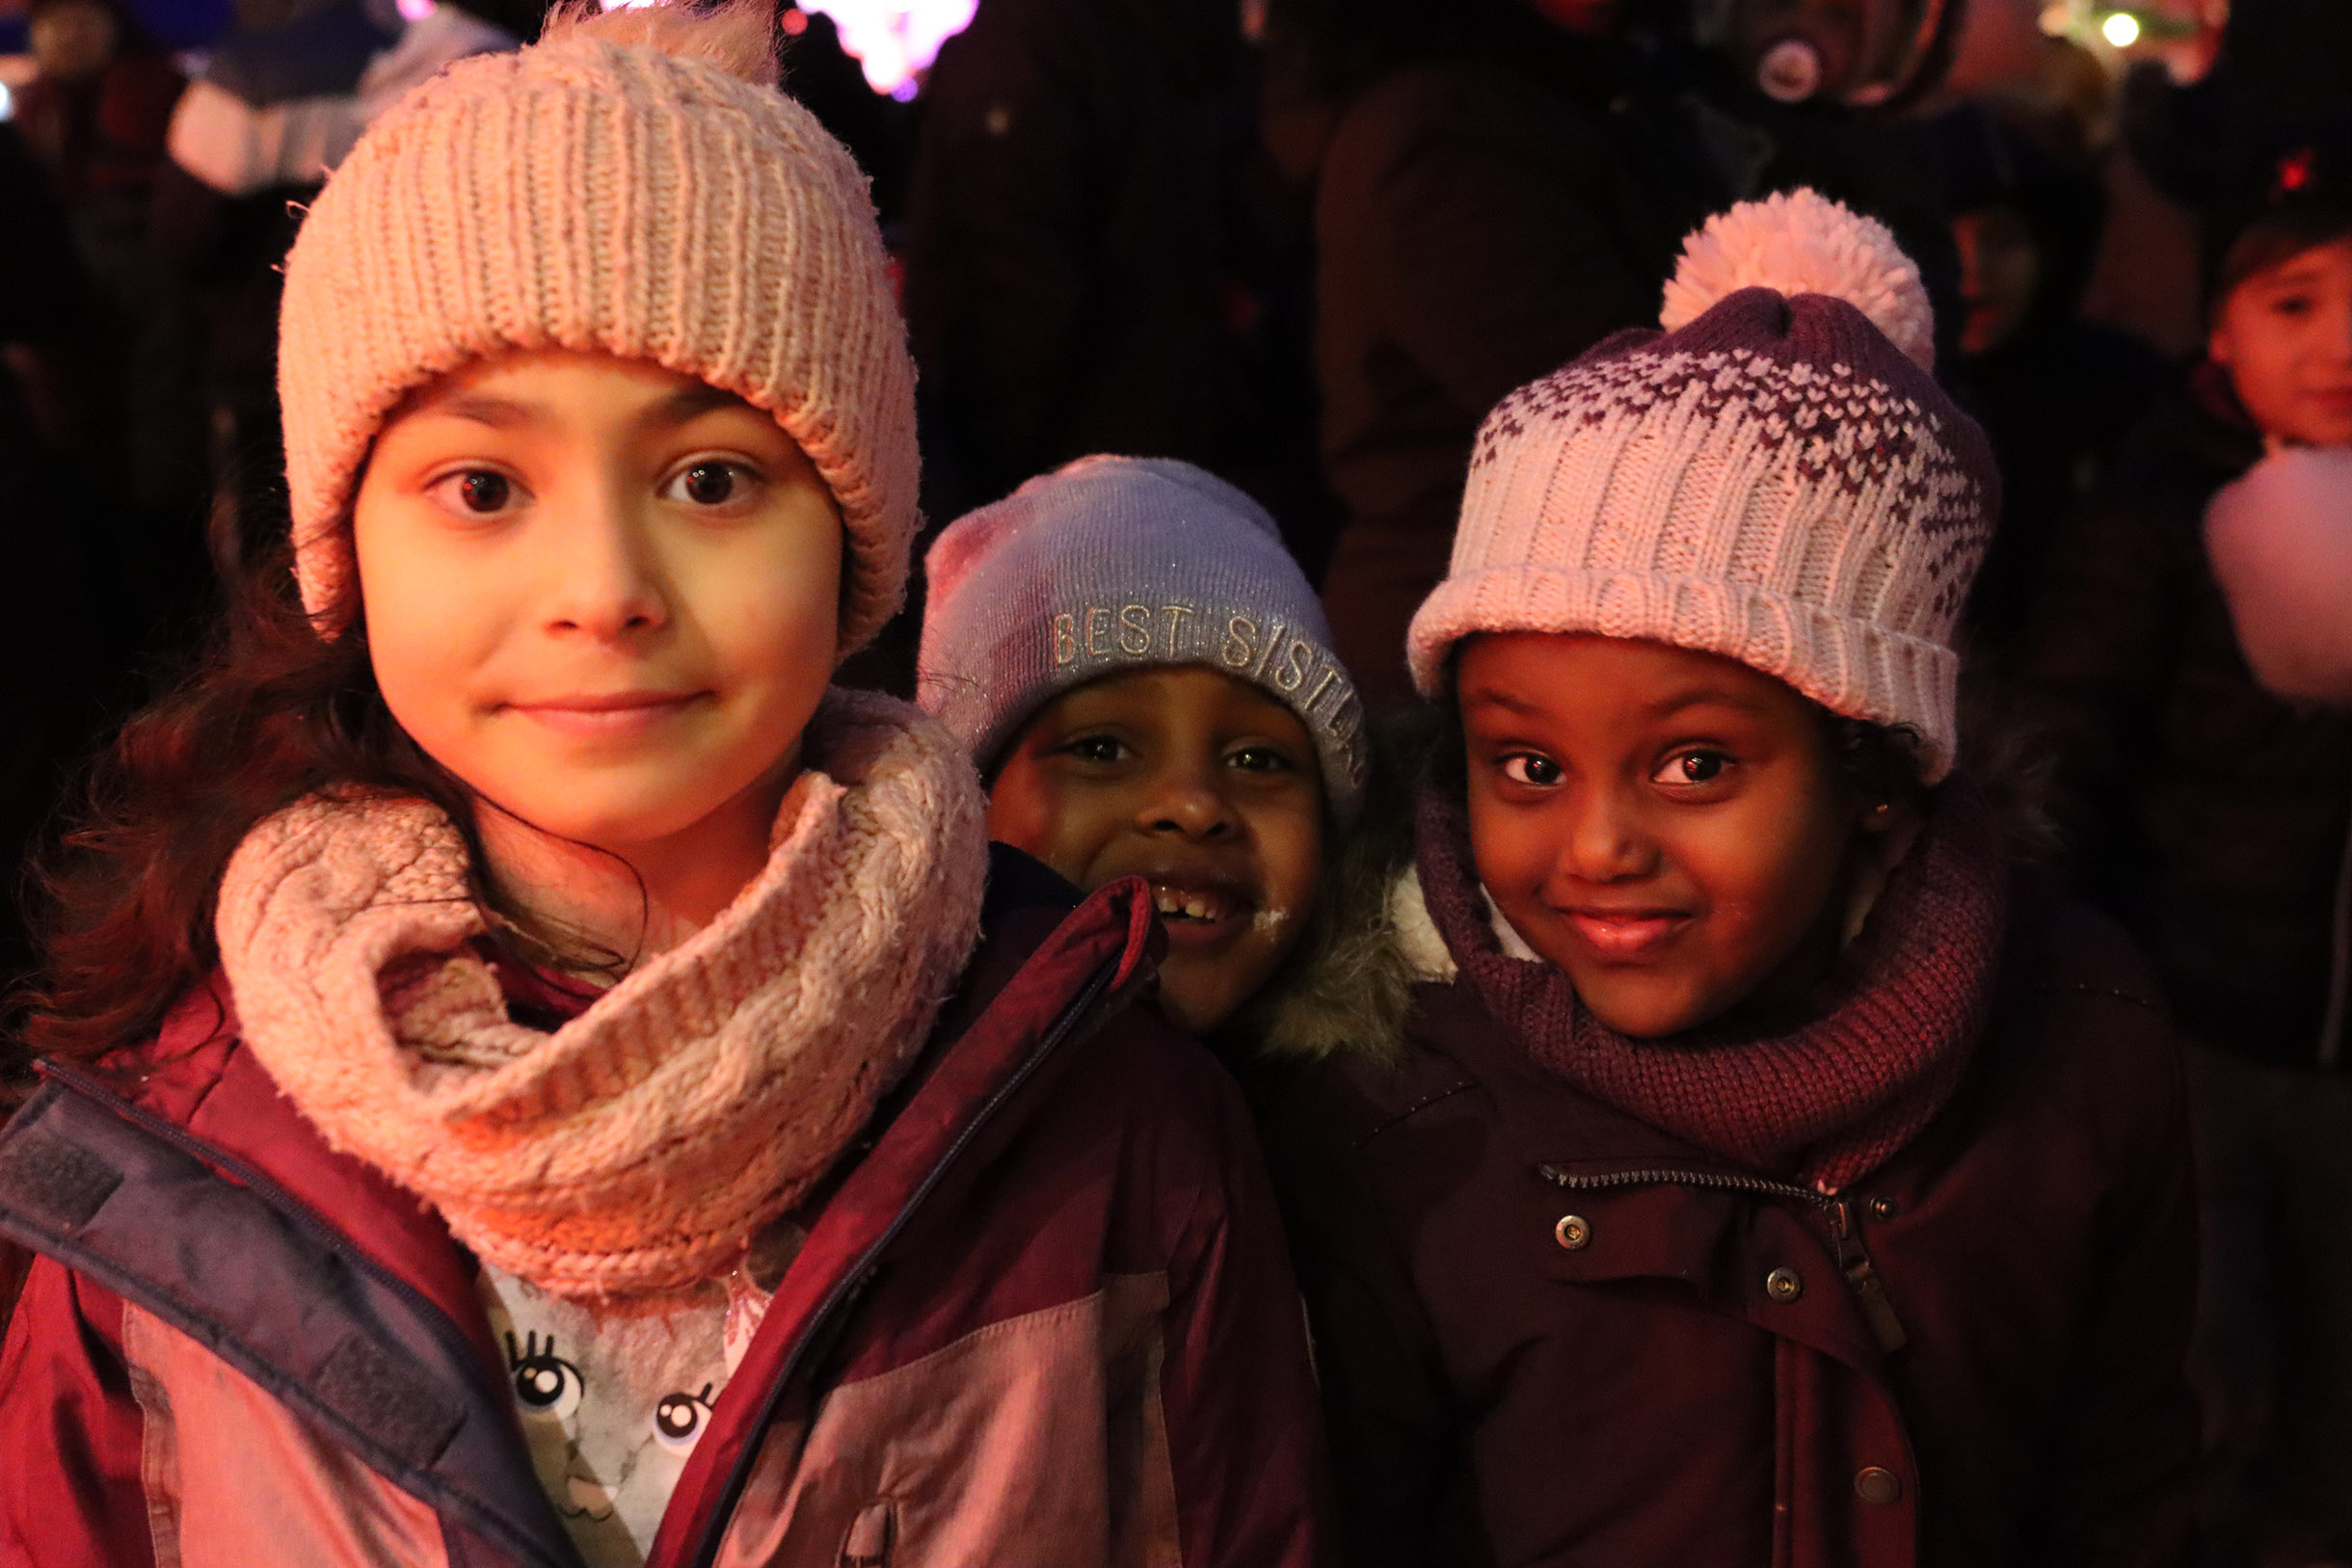 Drei Mädchen. Mit Winterkleidung, Mützen, Schal, Winterjacke. Im Alter von ca. 5 - 7 Jahren. Zwei der Mädchen sind afroafrikanisch (People of Color). Alle drei lächeln fröhlich.